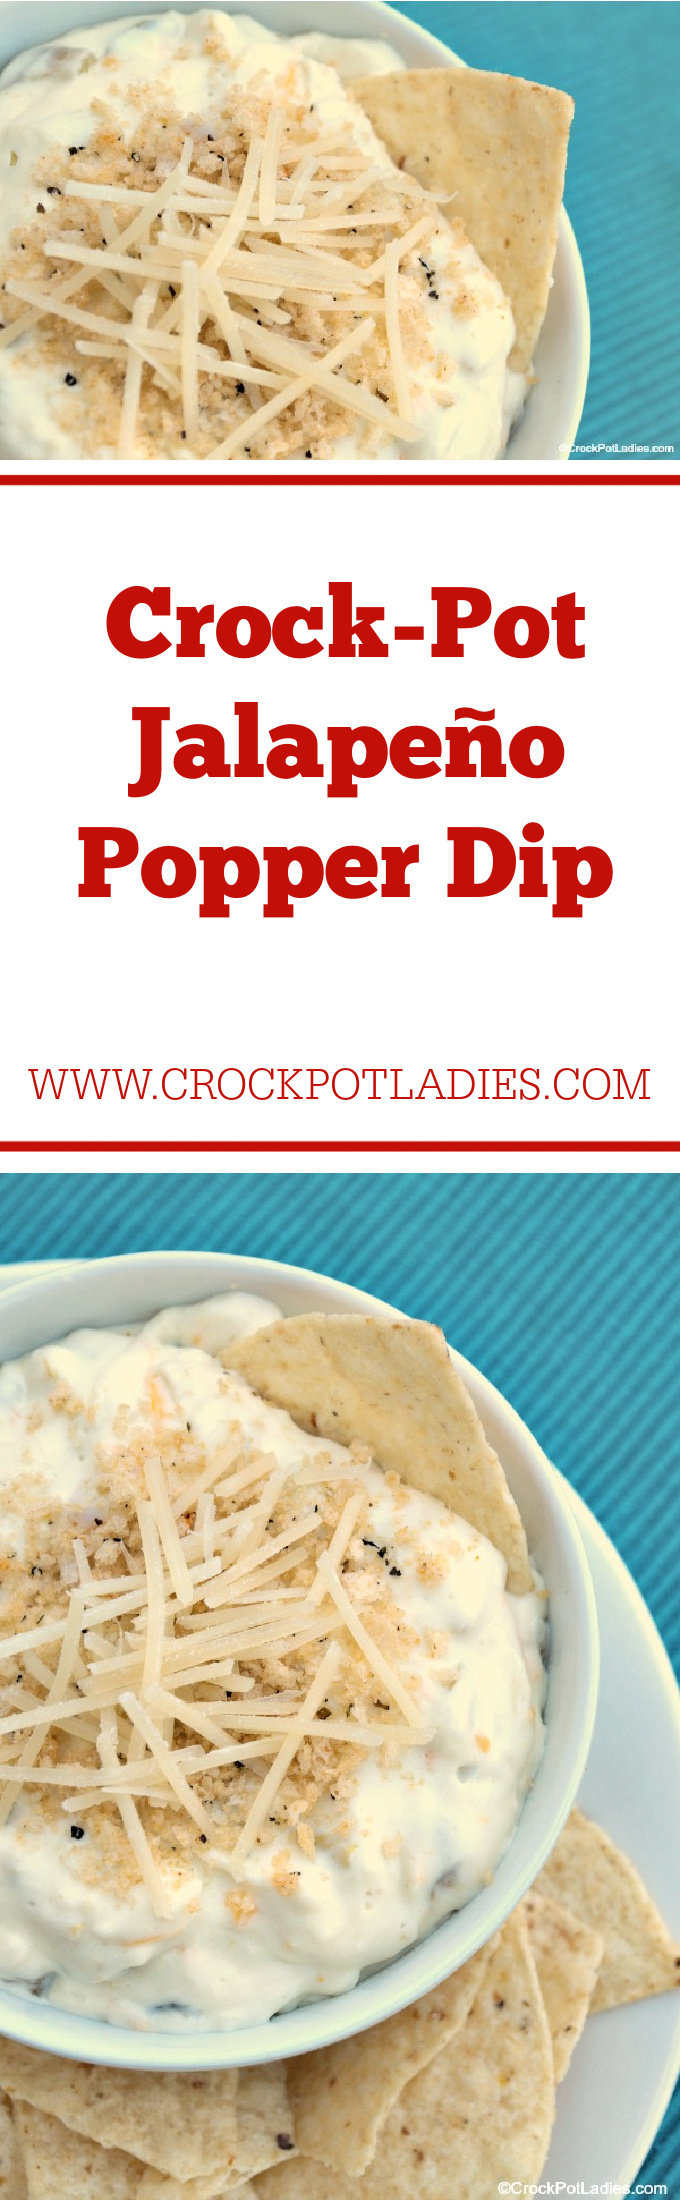 Crock-Pot Jalapeño Popper Dip